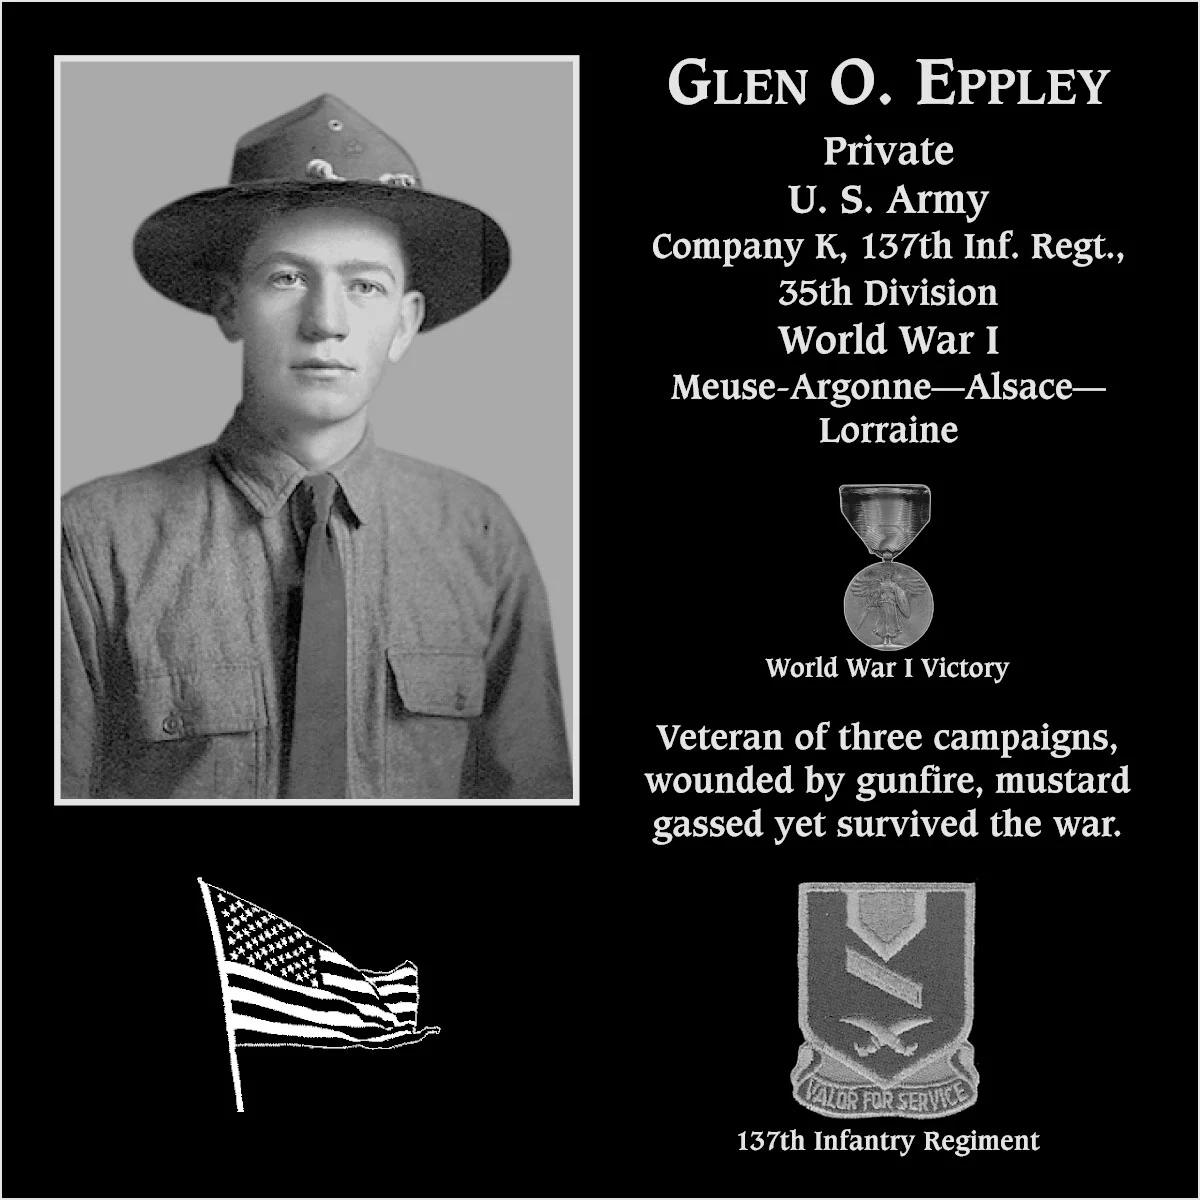 Glen O. Eppley